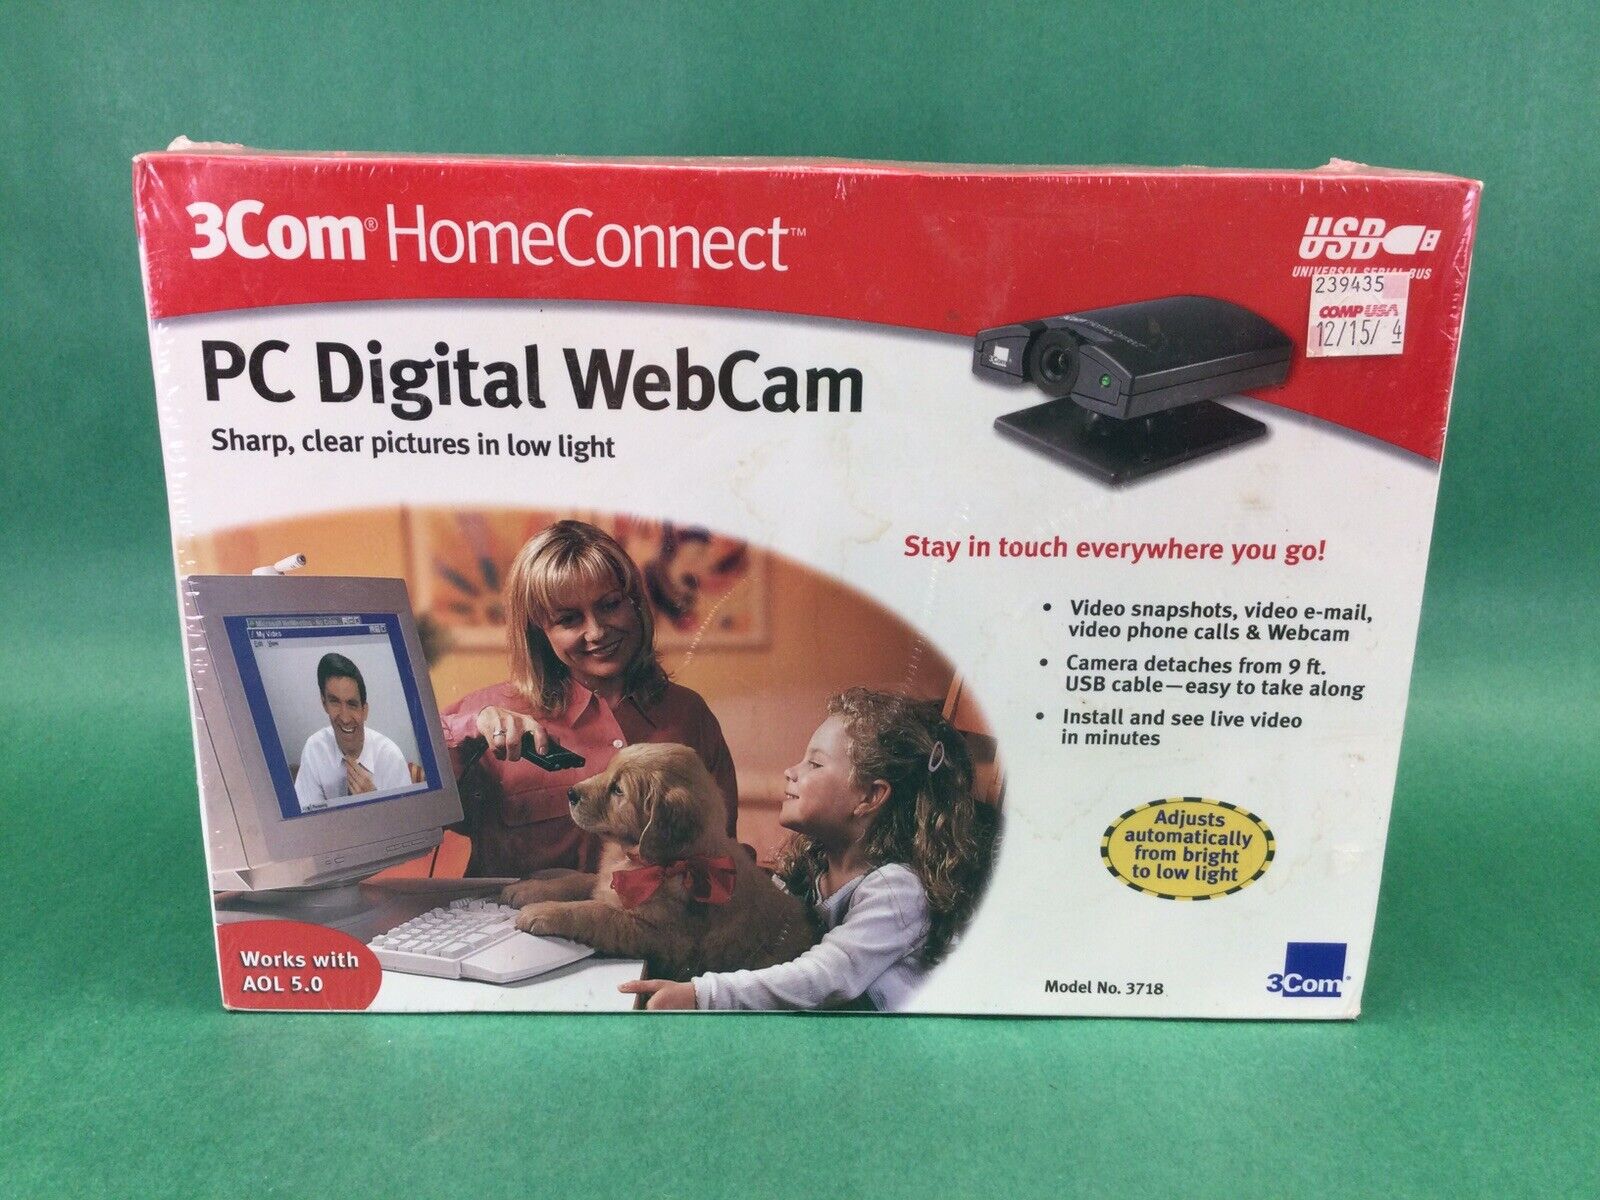 Brand New NOS 3COM HomeConnect 3718 Webcam PC Vintage Camera - CompUSA Sticker